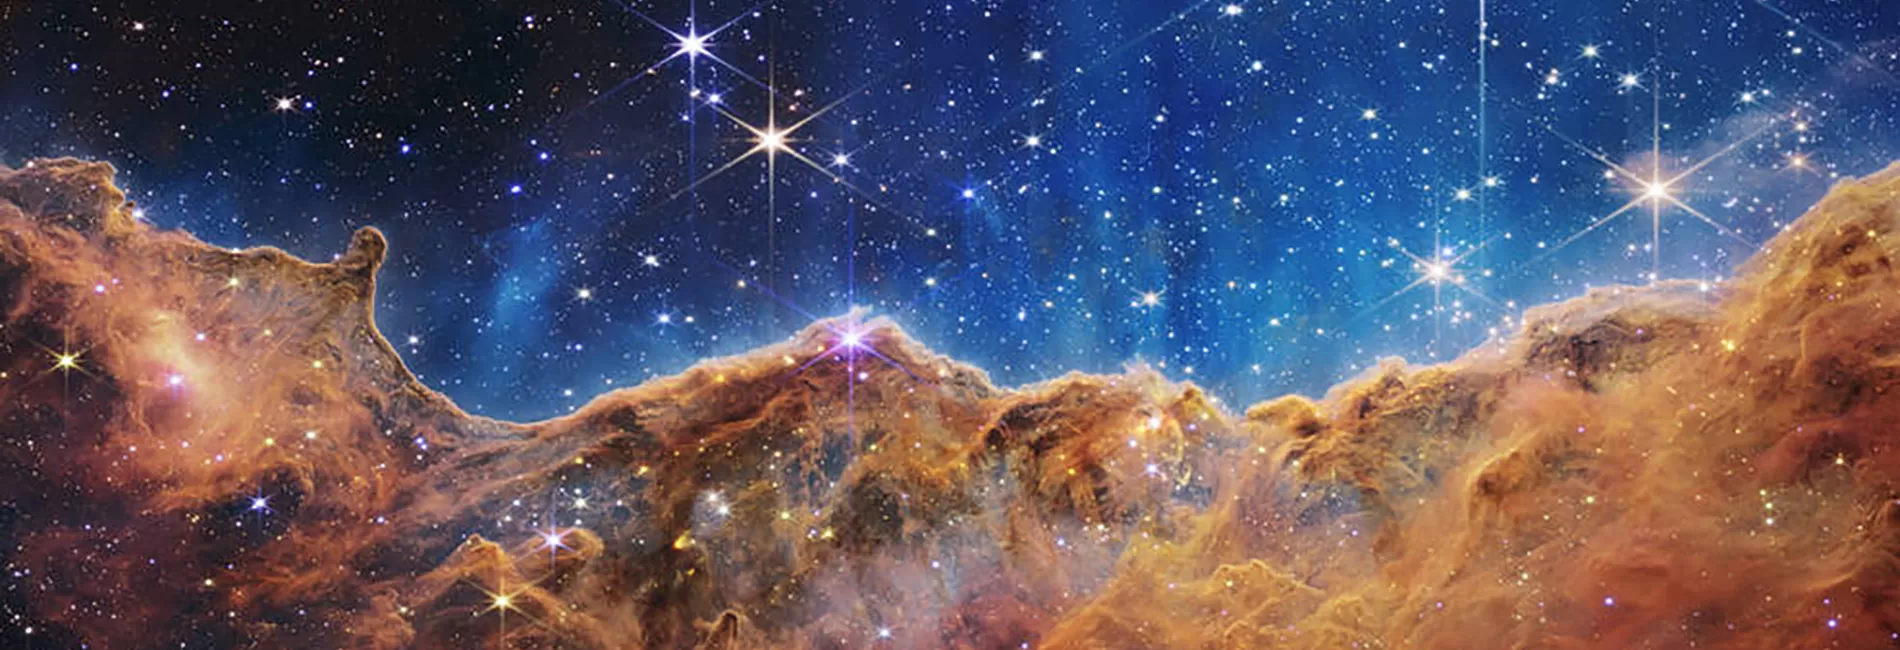 Stargazing led by Roger Liddell